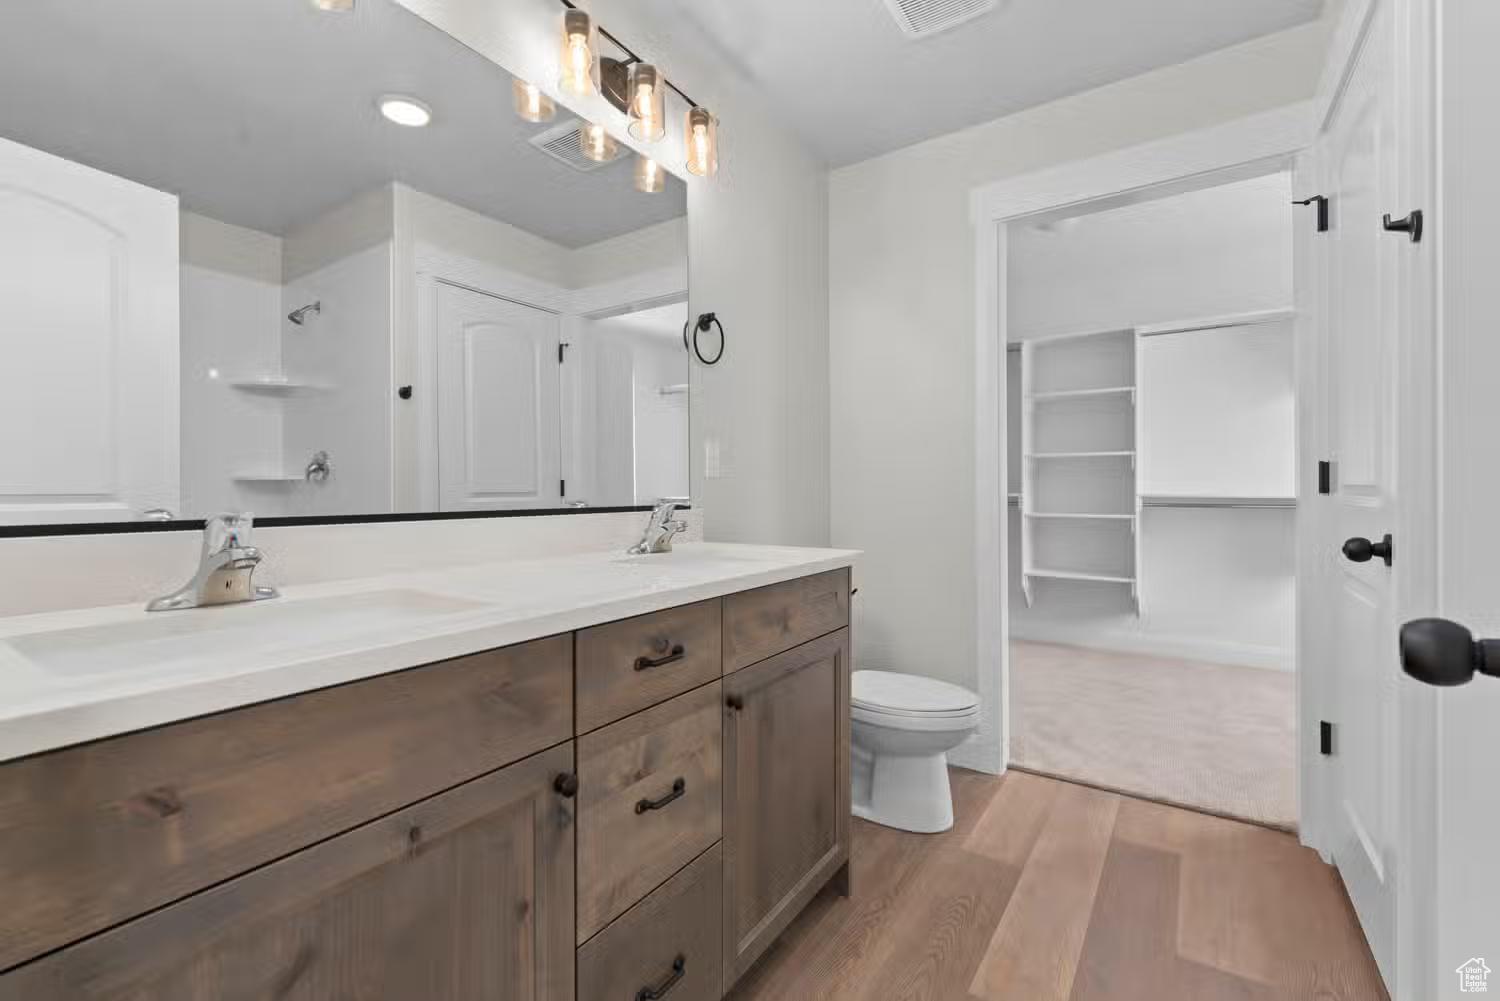 Bathroom featuring large vanity, dual sinks, toilet, and wood-type flooring